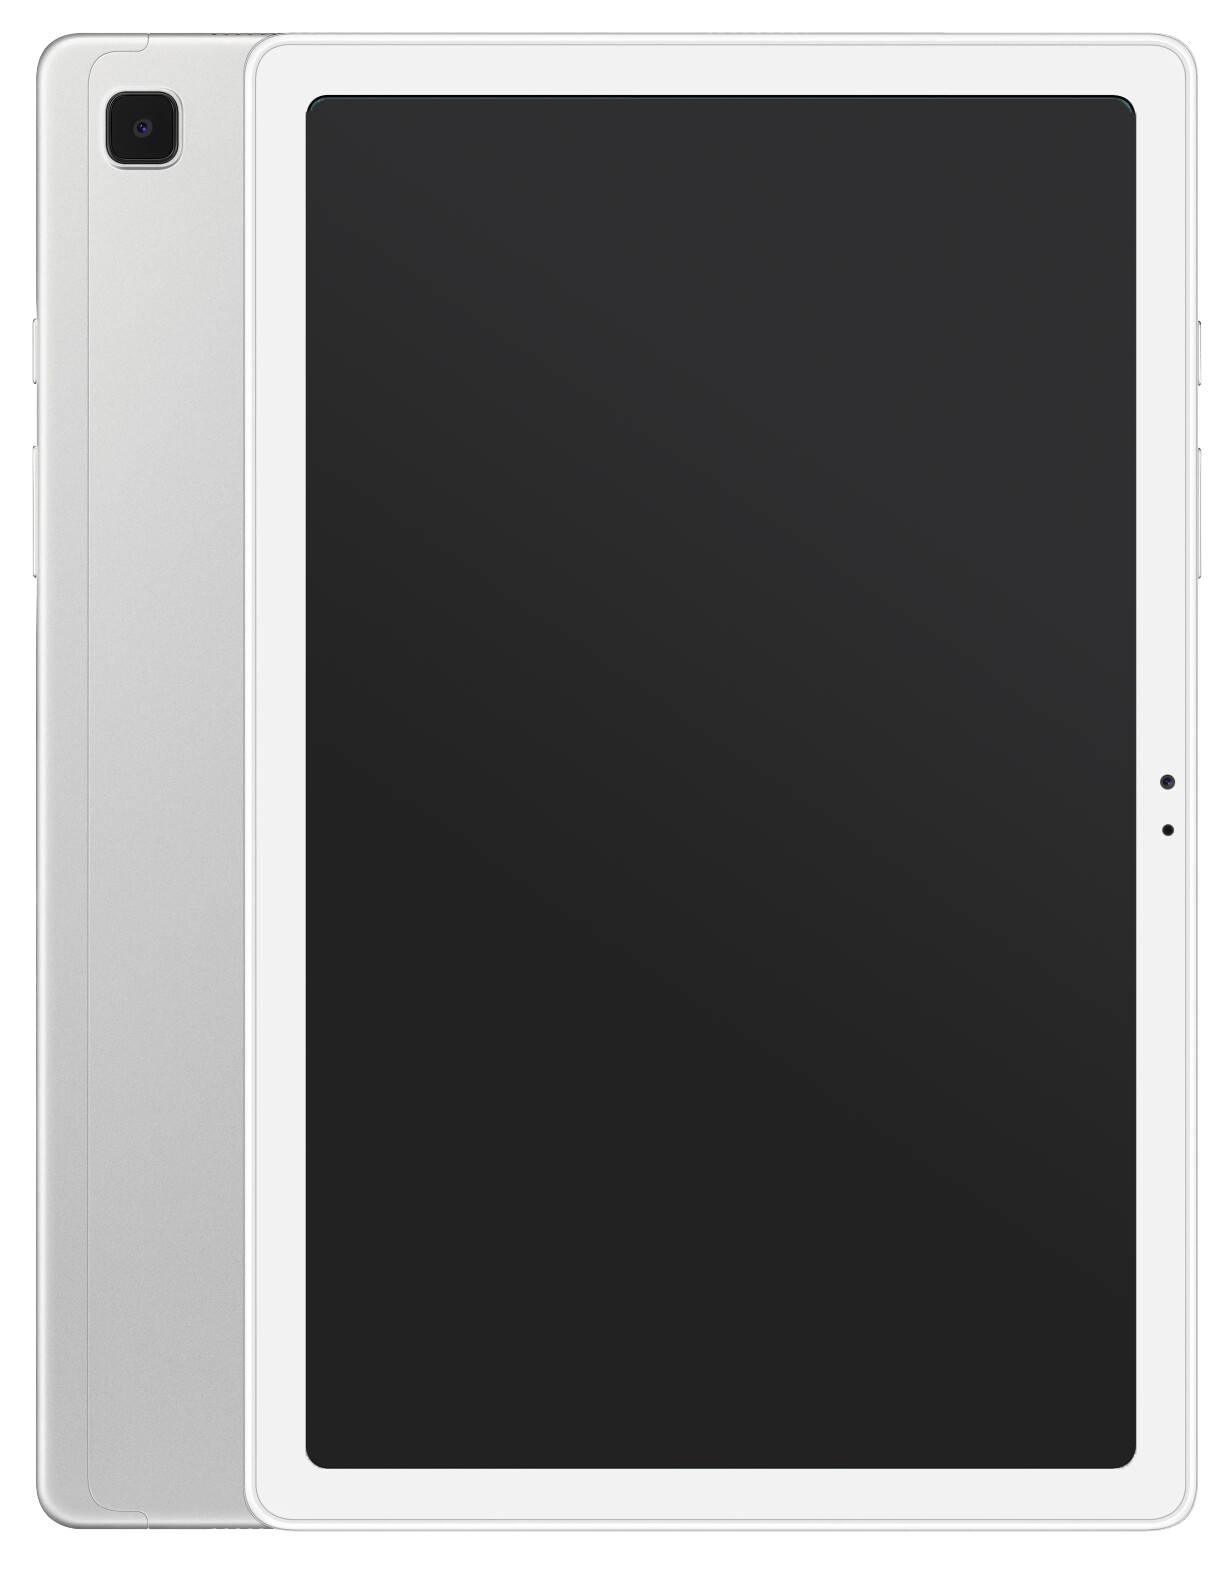 Samsung Galaxy Tab A7 WIFI silber - Ohne Vertrag